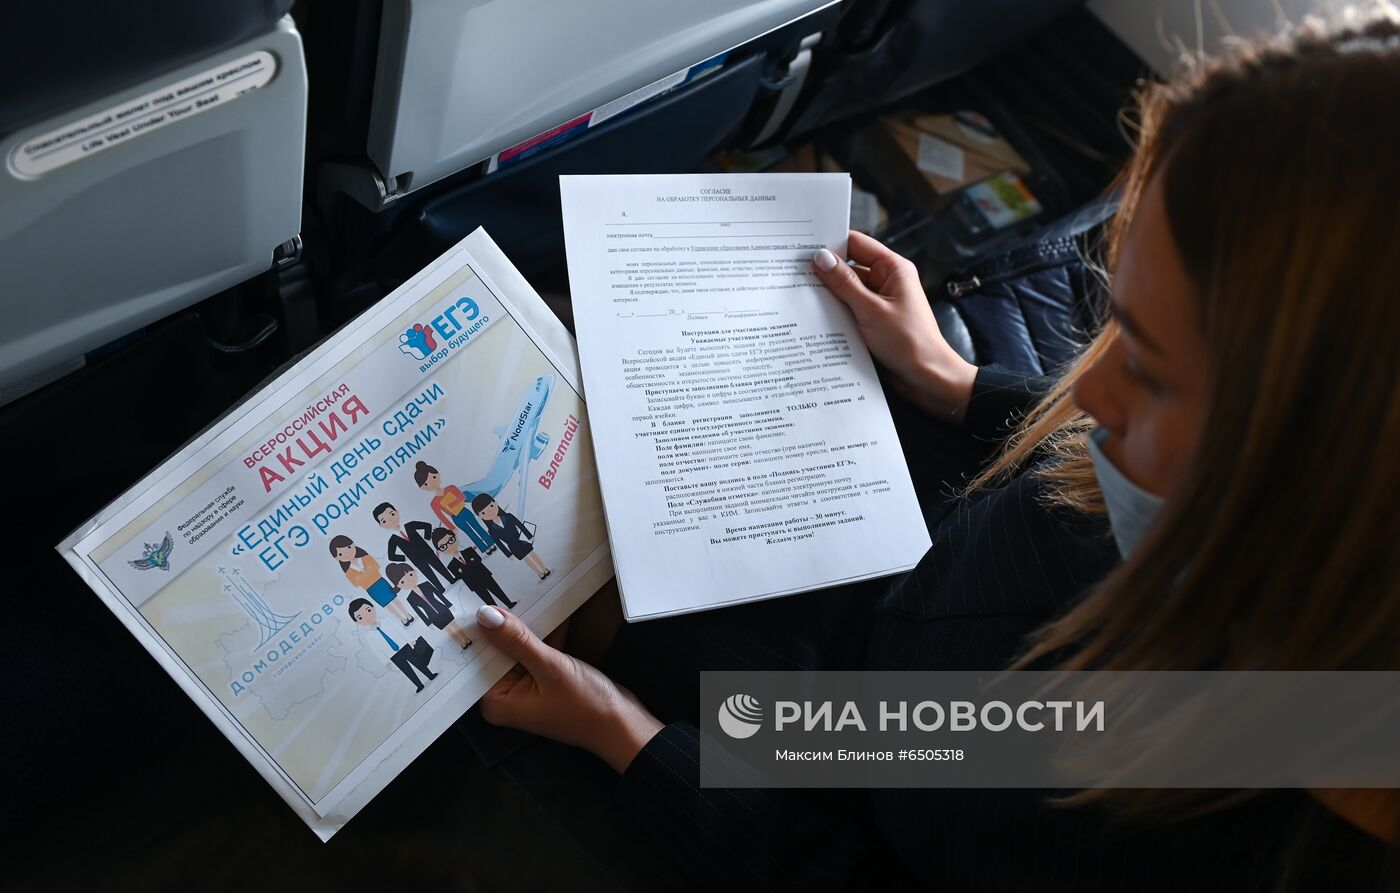 Всероссийская акция "Единый день сдачи ЕГЭ родителями" на борту самолета 